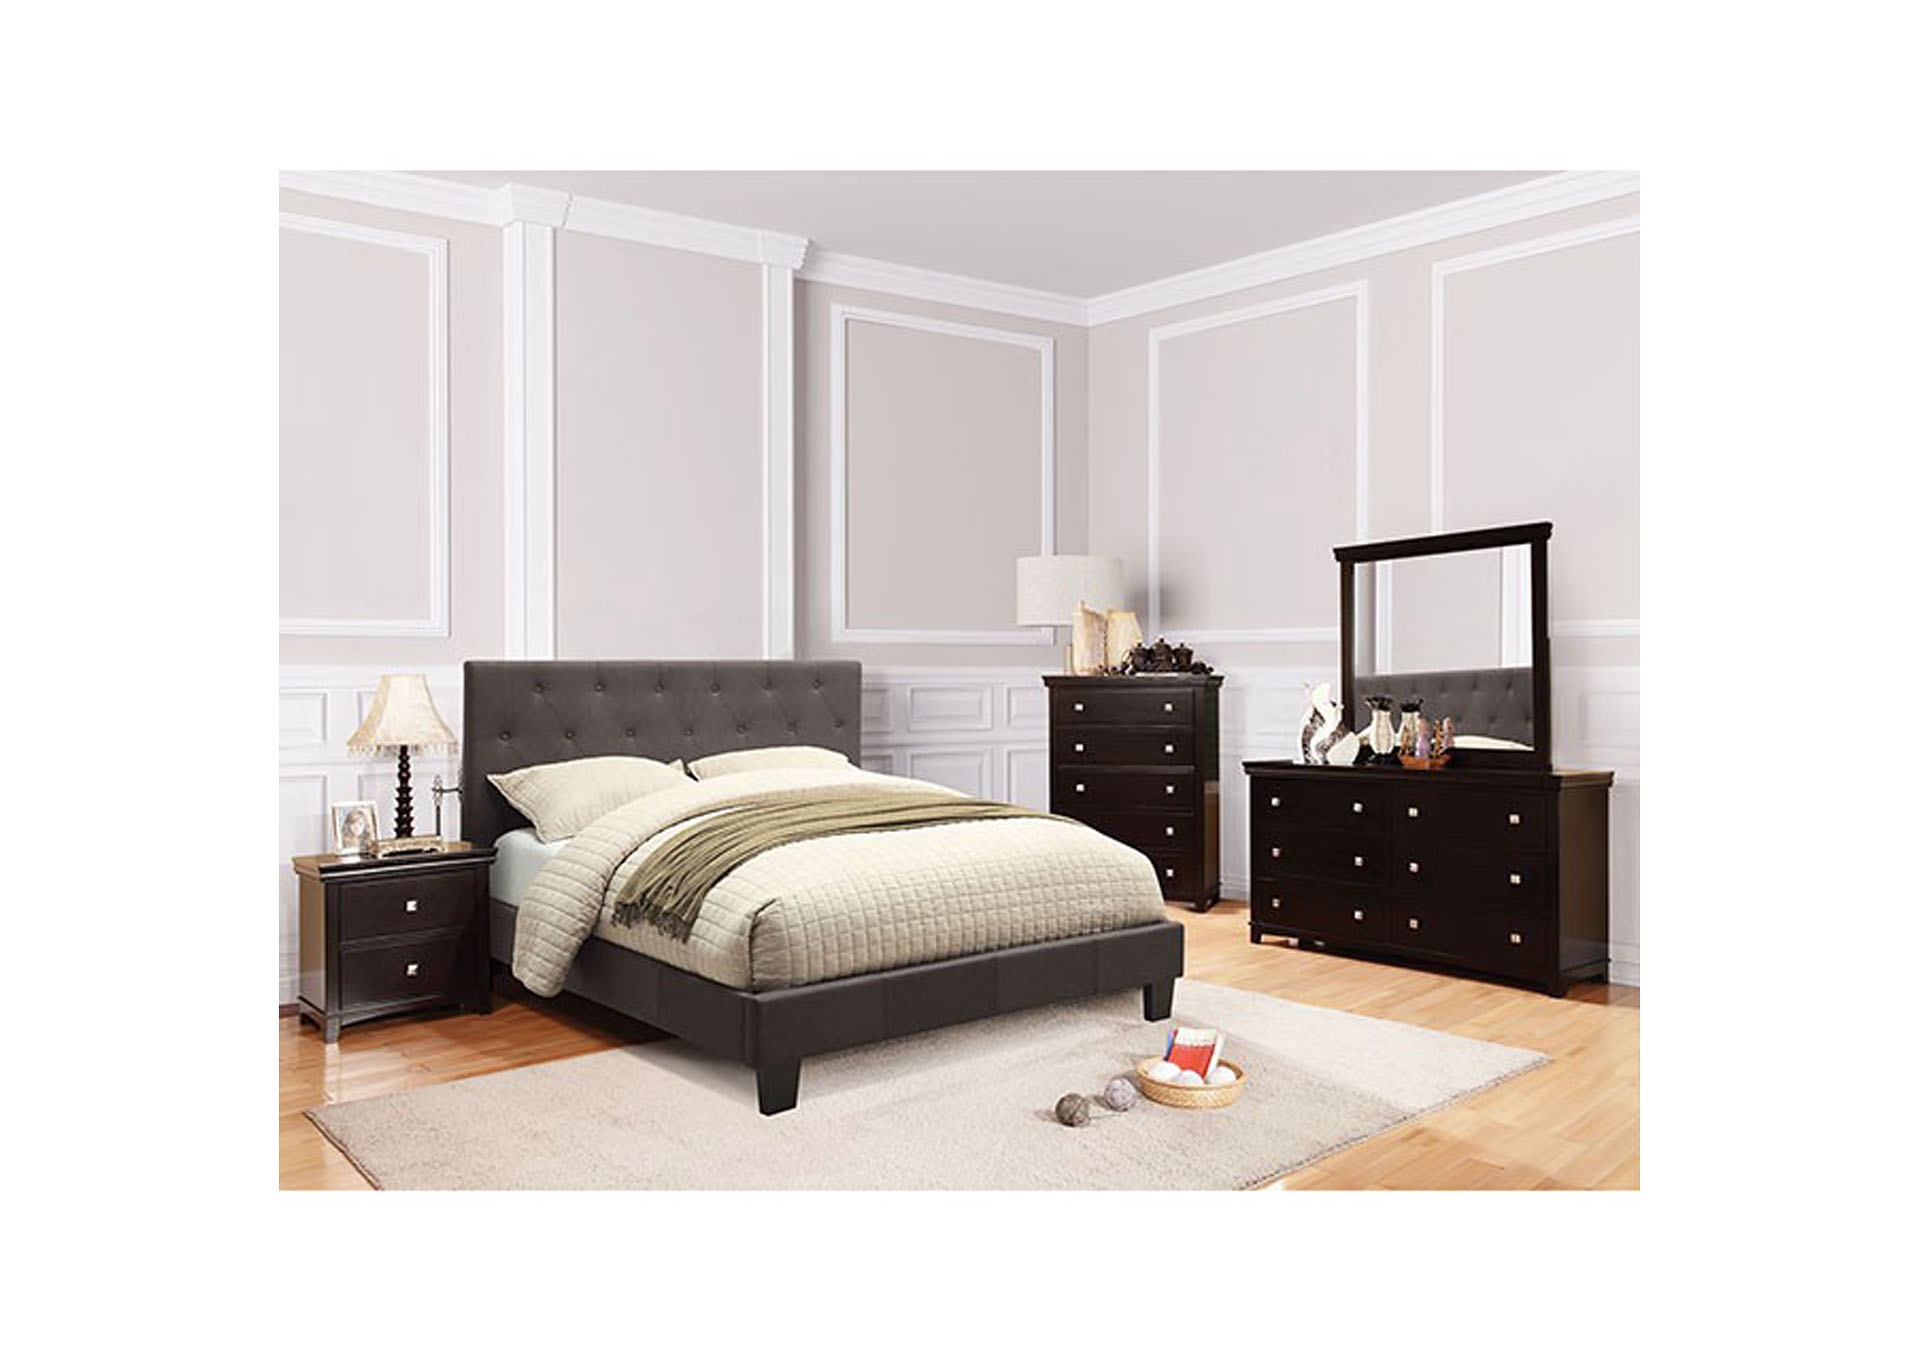 Leeroy Gray Queen Bed,Furniture of America